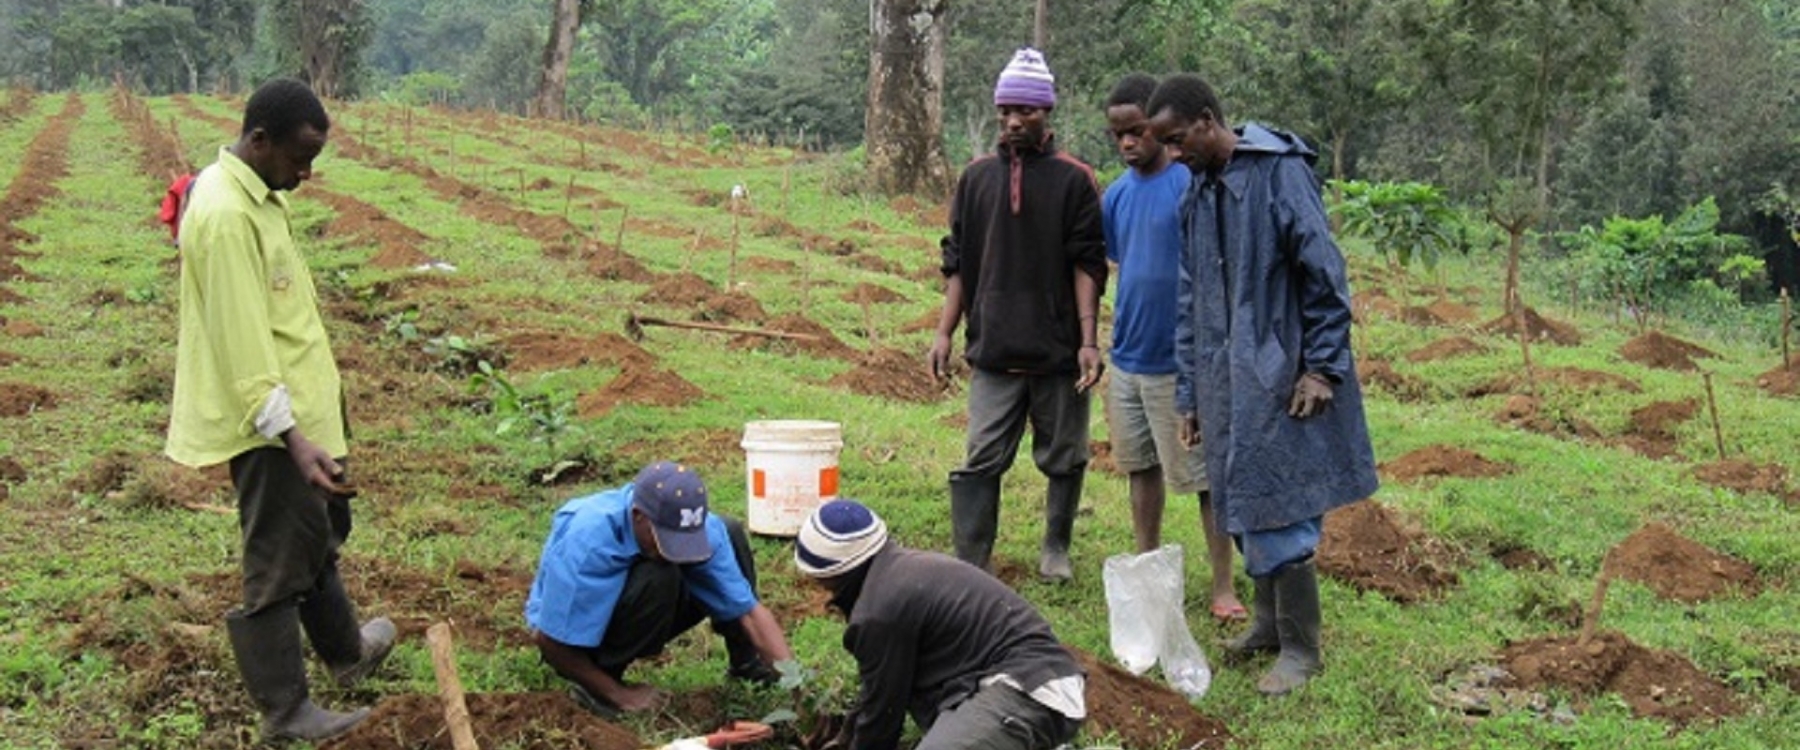 Tree planting in Arusha, Tanzania